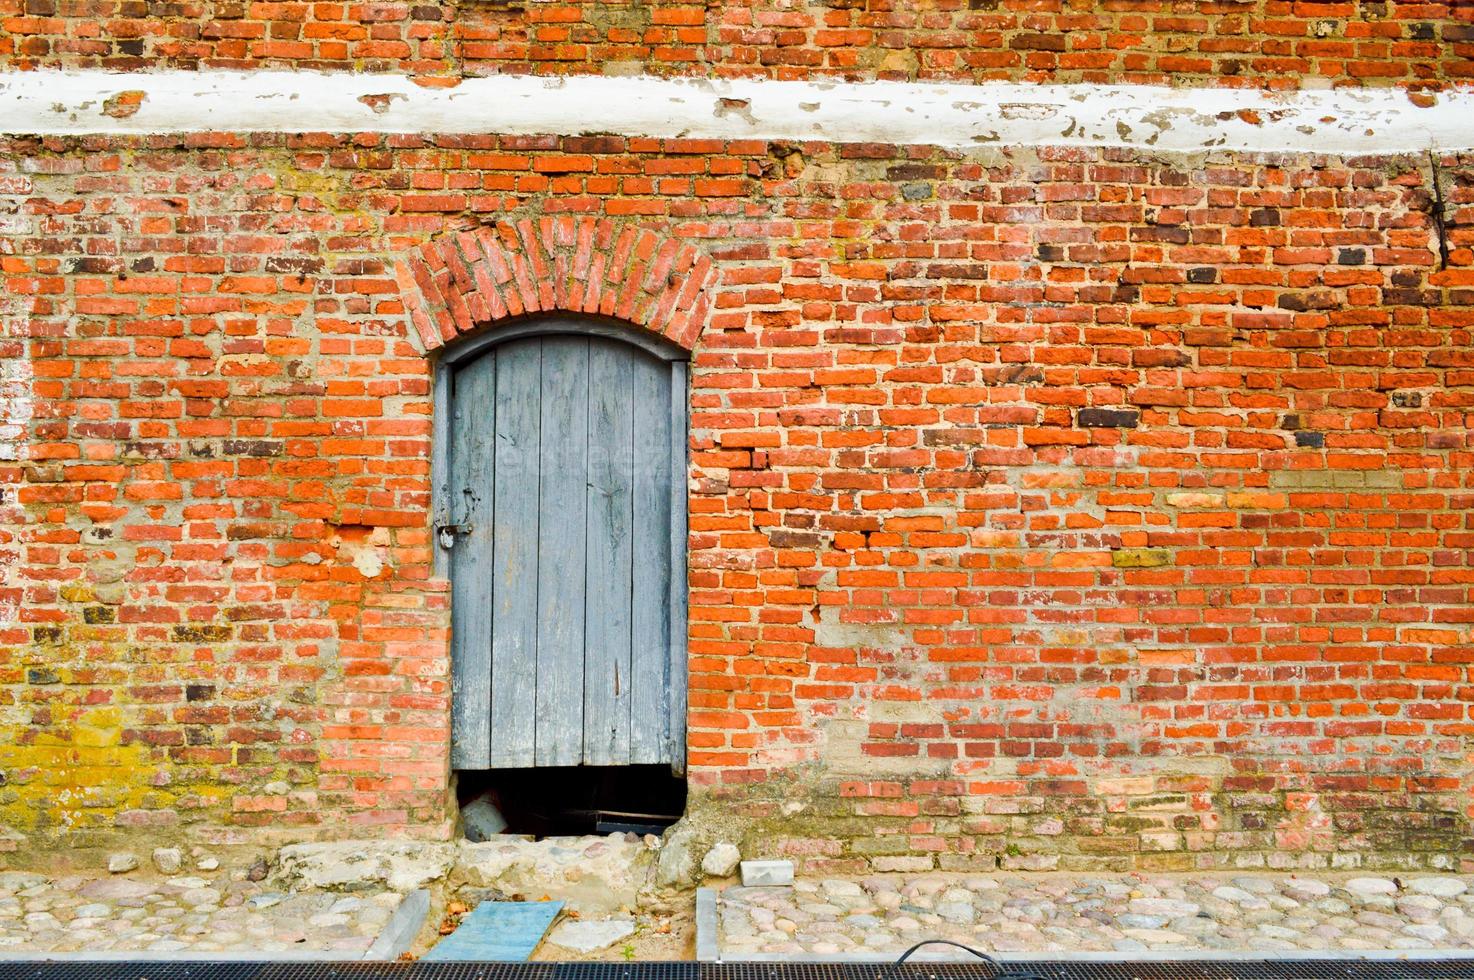 de textur av de gammal gammal medeltida antik fast trä- naturlig tjock dörr med nitar och naglar mönster och lås tillverkad av trä- plankor mot de bakgrund av en sten vägg av röd tegel foto